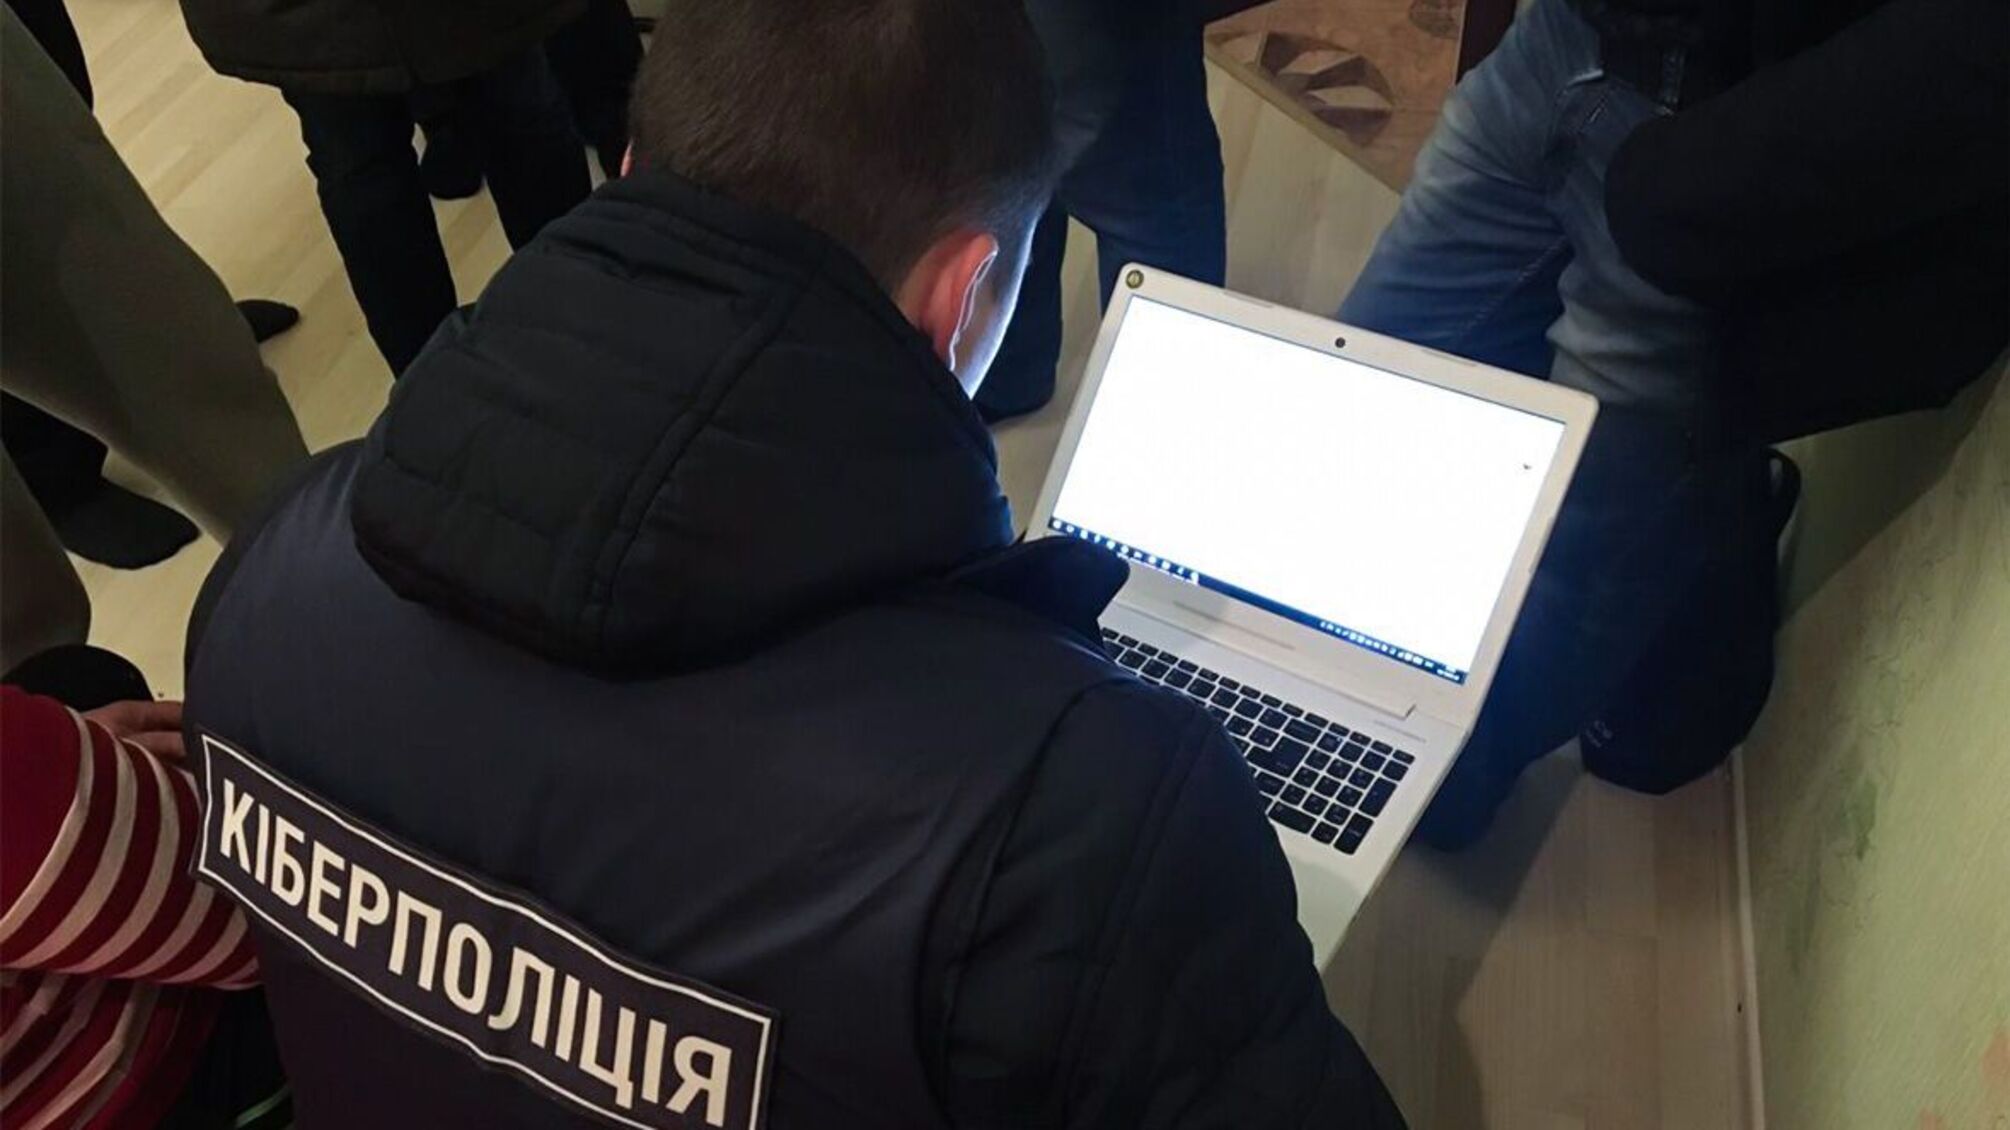 Присвоили 1 млн грн с банковских счетов украинцев: киберполиция разоблачила мошенников